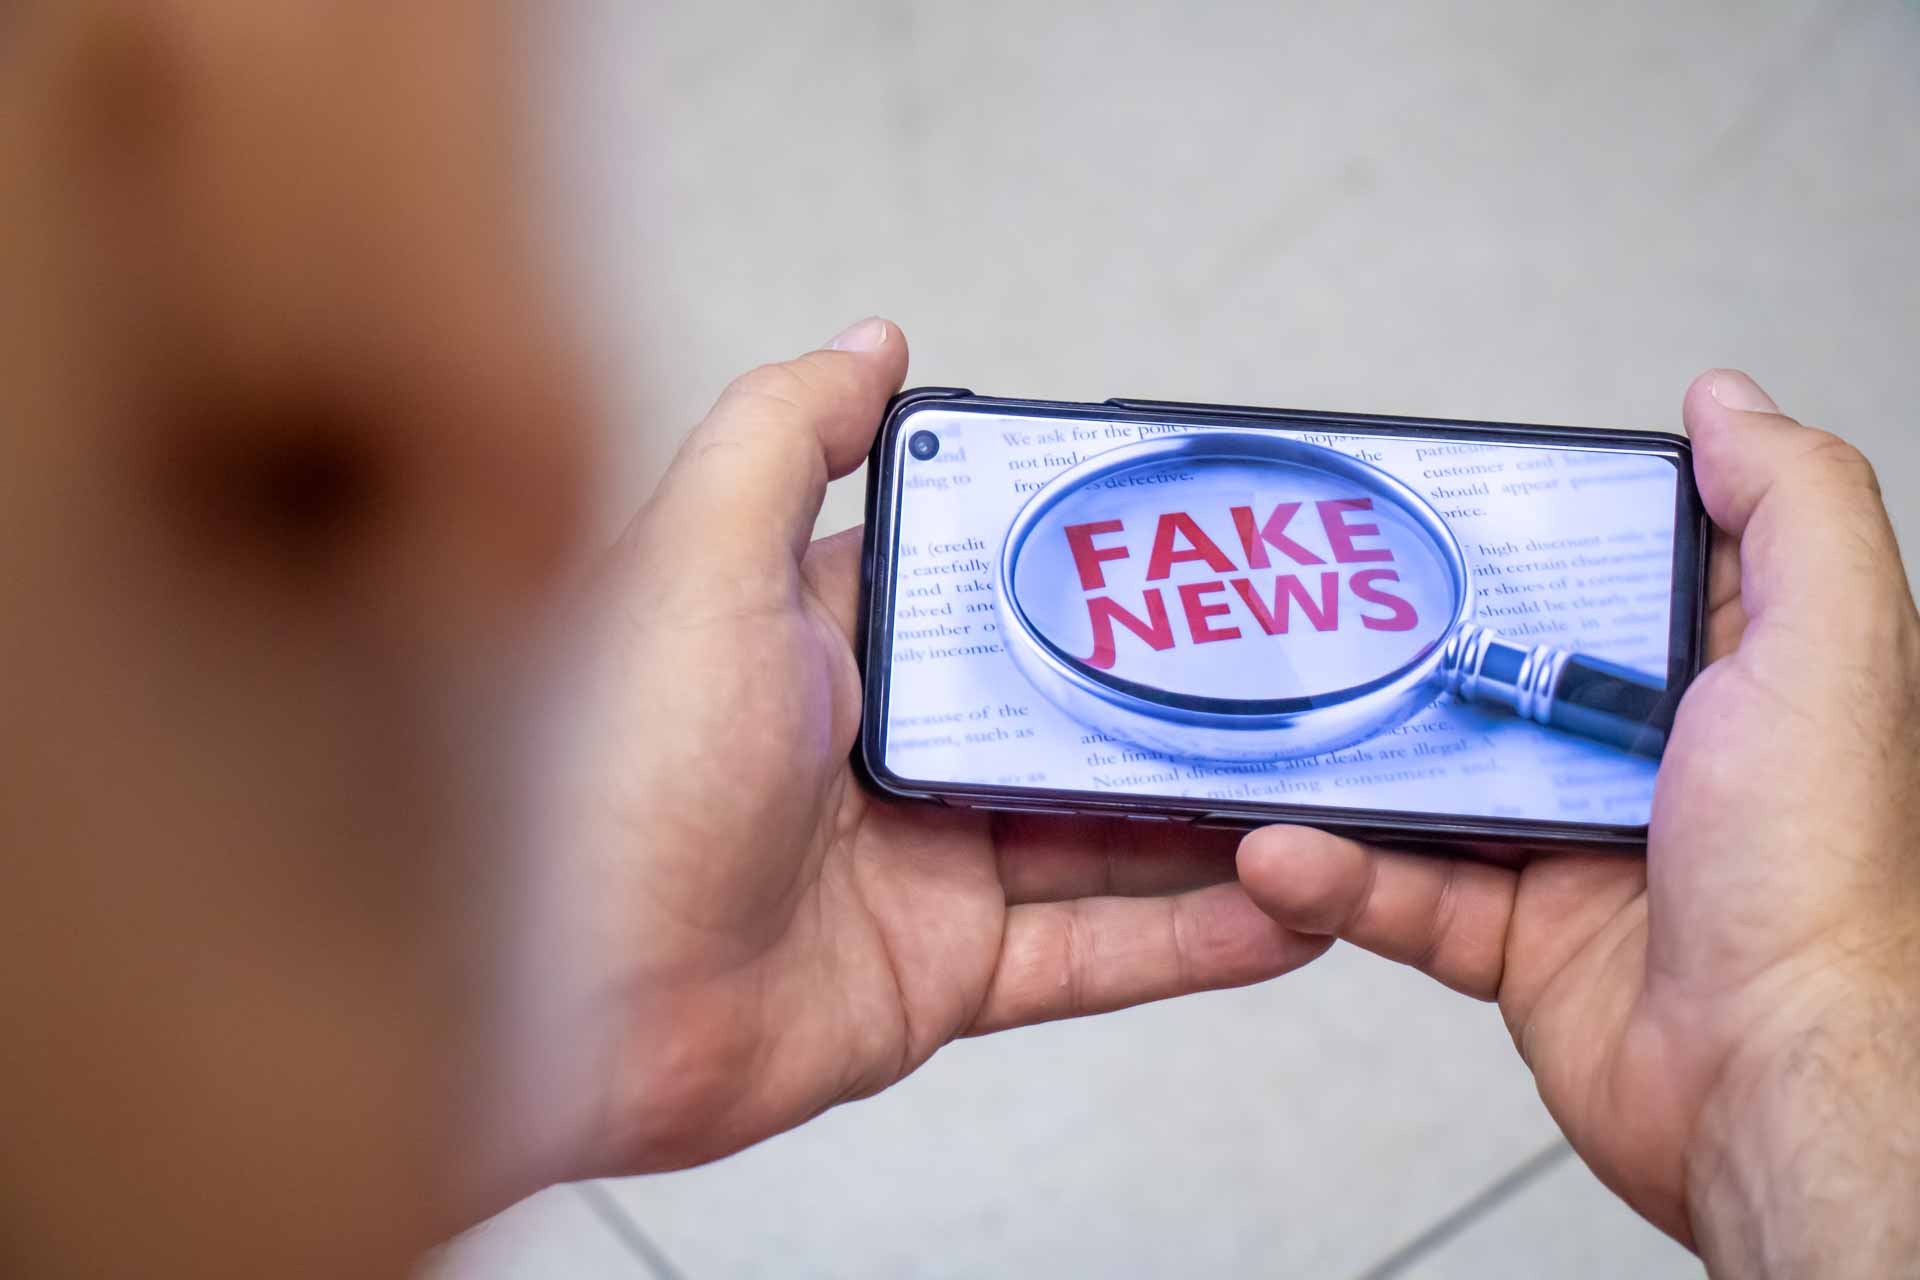 Mãos segurando celular no qual pode-se ver a imagem de uma lupa sobre as palavras "fake news".